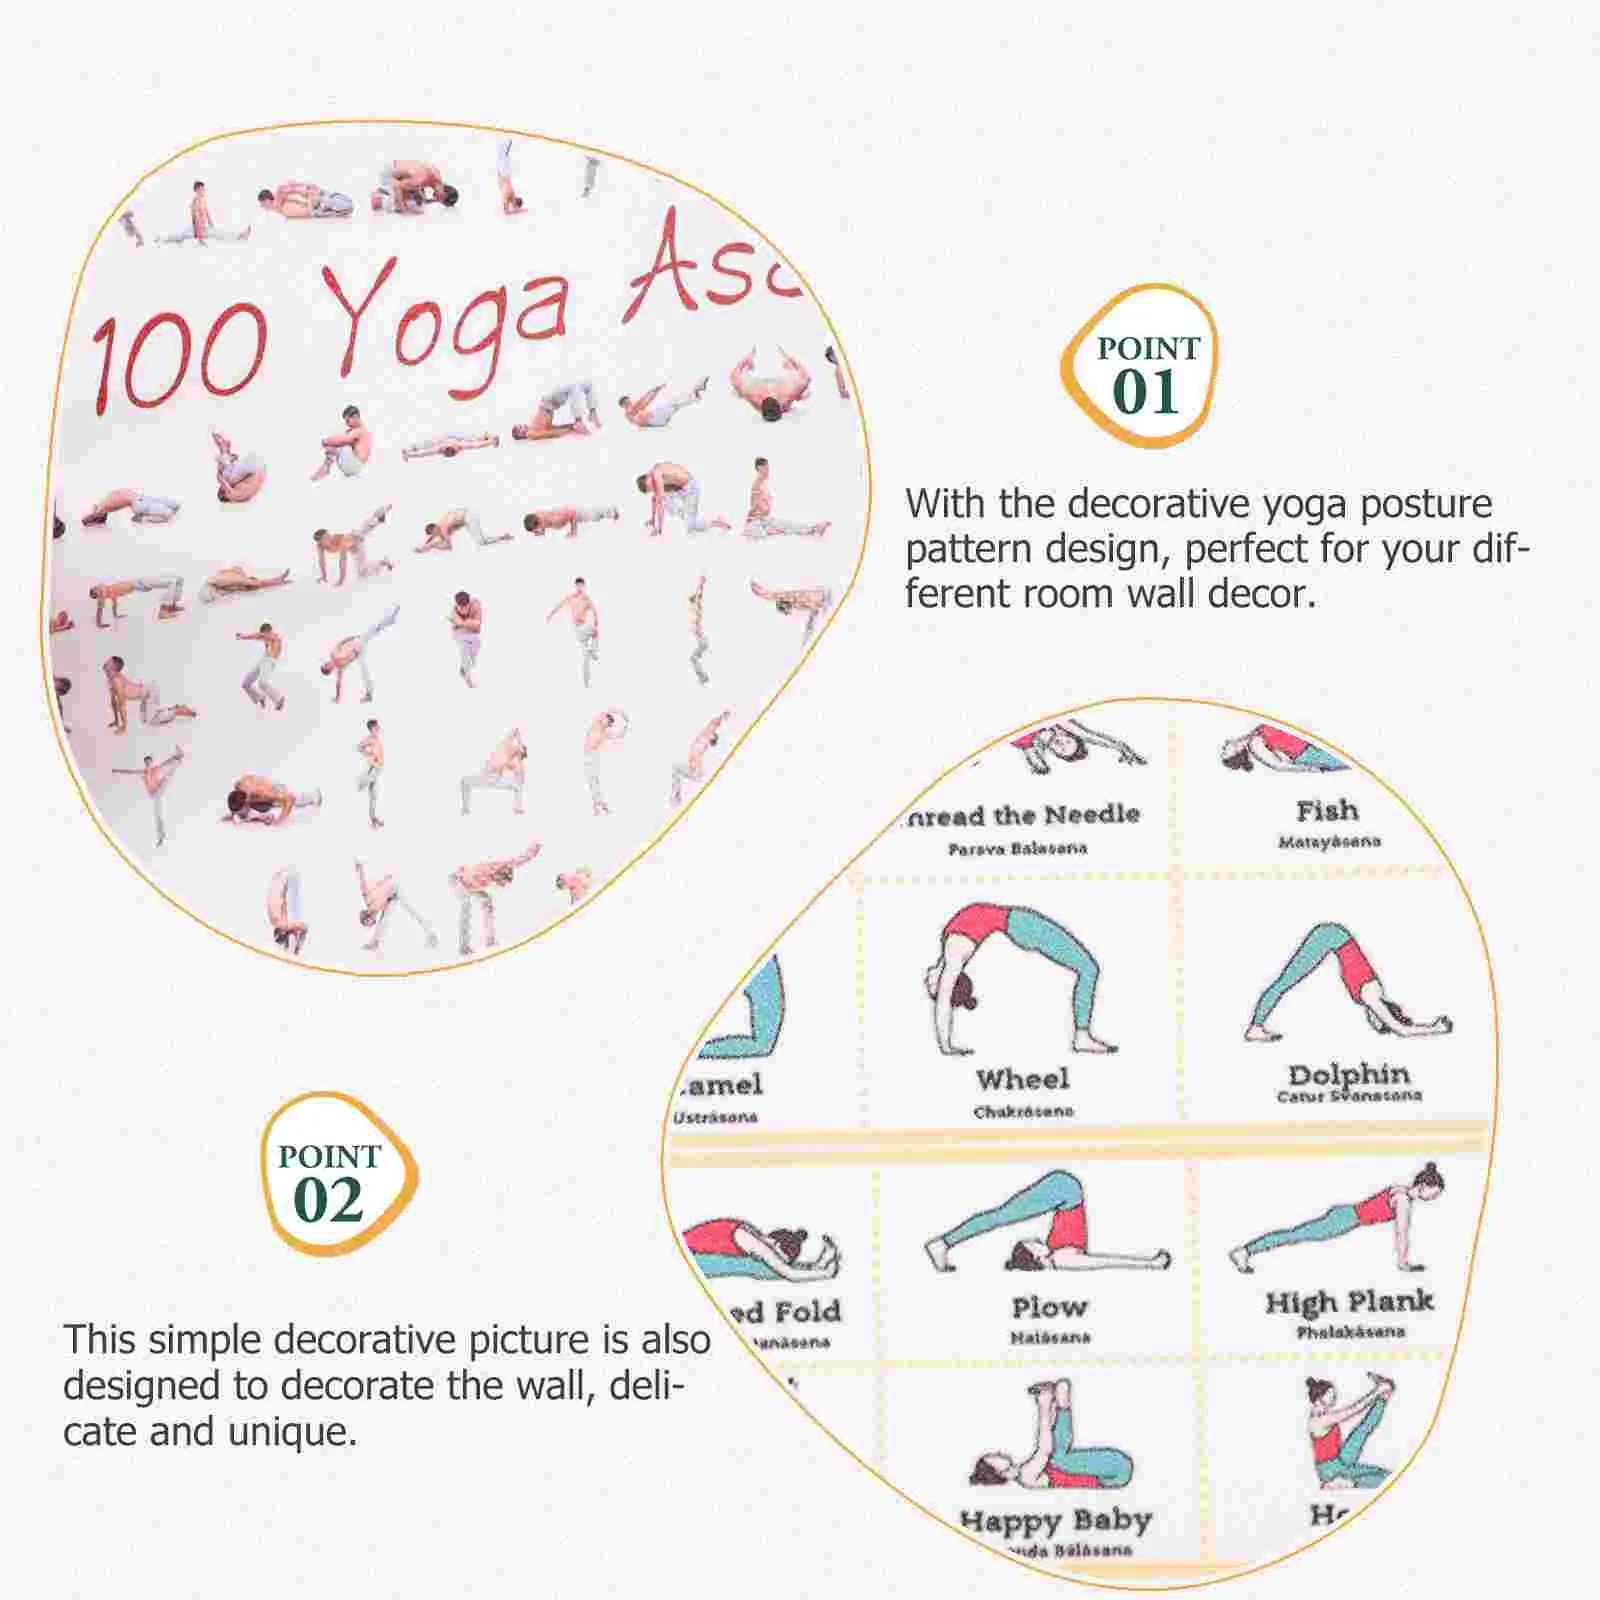 6 szt. Sprzęt do jogi ścienny sprzęt do jogi projekt na płótnie plakat do jogi obraz gospodarstwa domowego trening domowy sprzęt do jogi